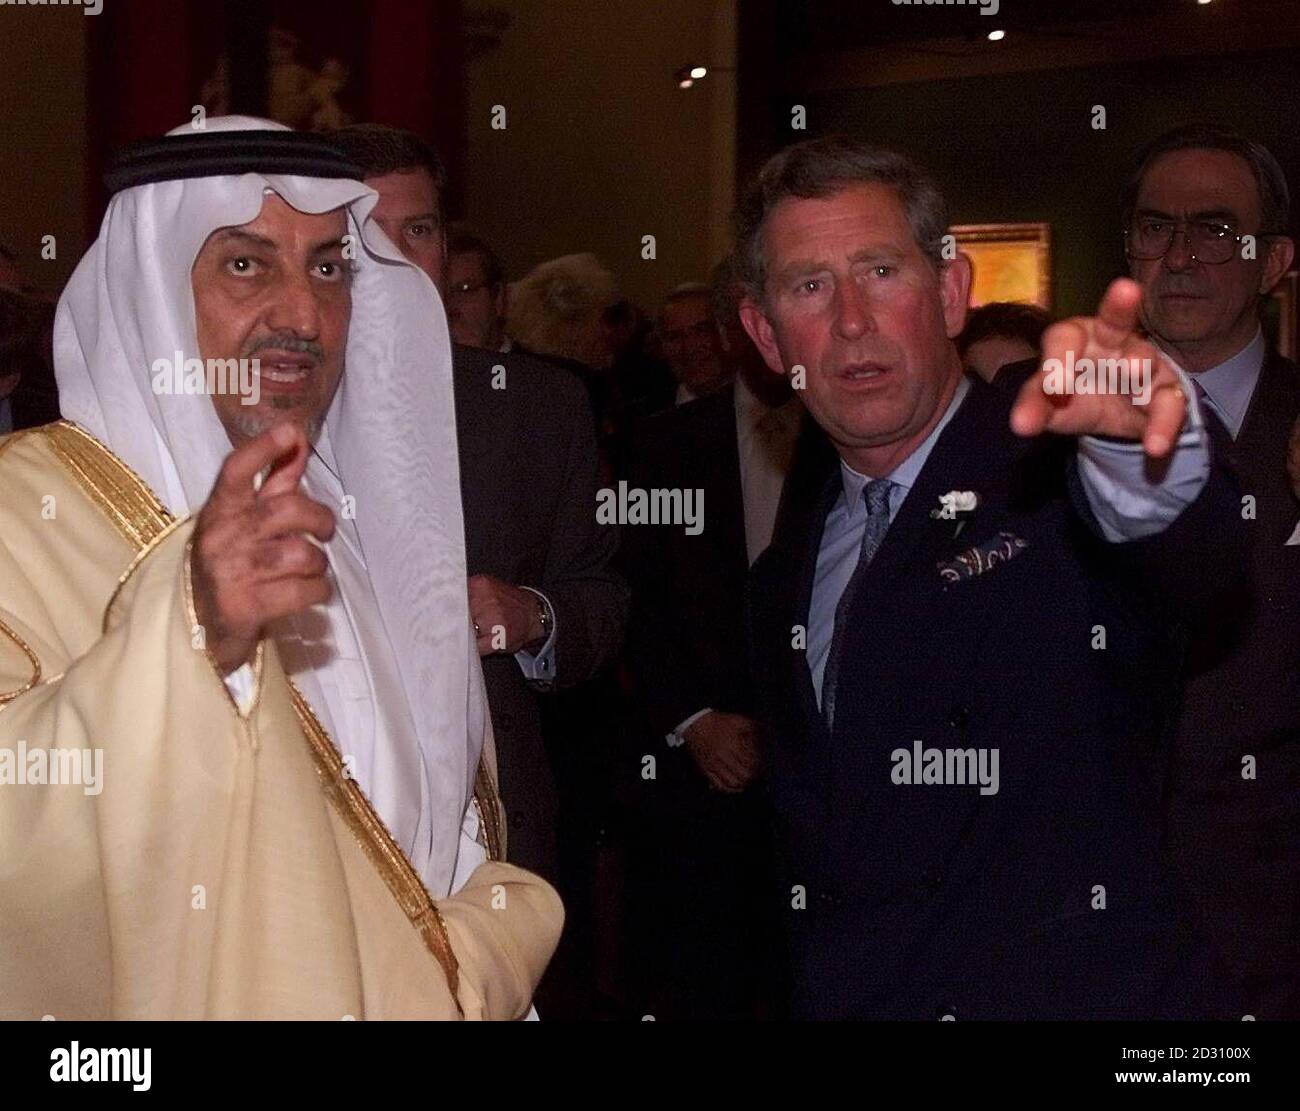 Il Principe del Galles (R) partecipa a un ricevimento per lanciare la sua mostra congiunta di dipinti con il Principe Khalid al-Faisel al-Saud, presso la Banqueting House di Whitehall, nel centro di Londra. Foto Stock